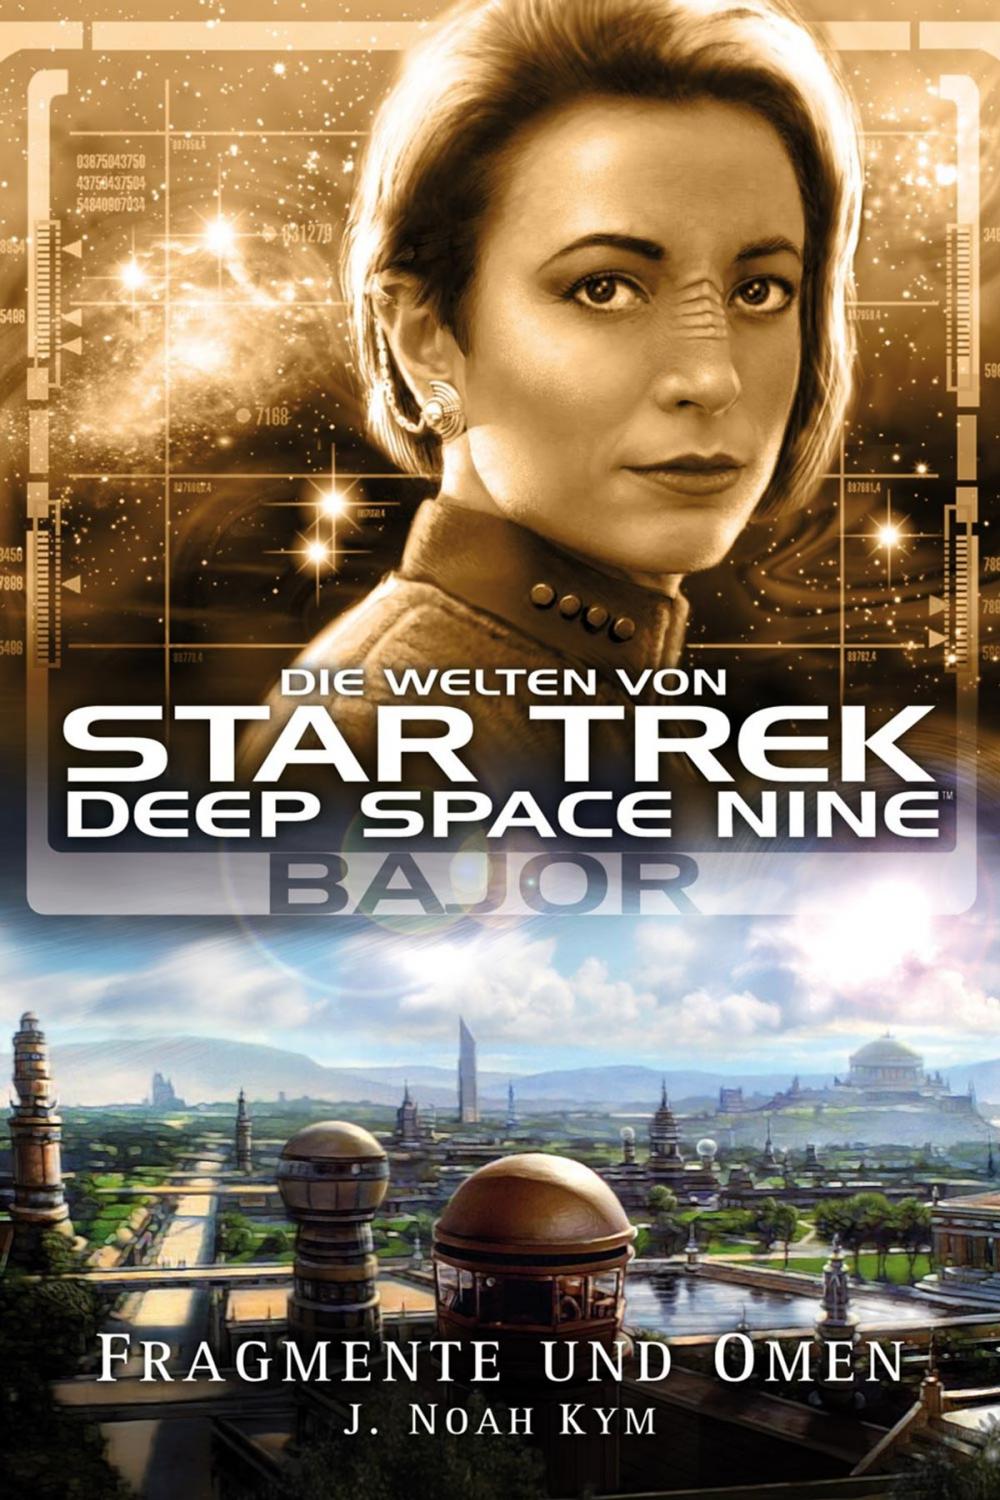 Big bigCover of Star Trek - Die Welten von Deep Space Nine 04: Bajor - Fragmente und Omen